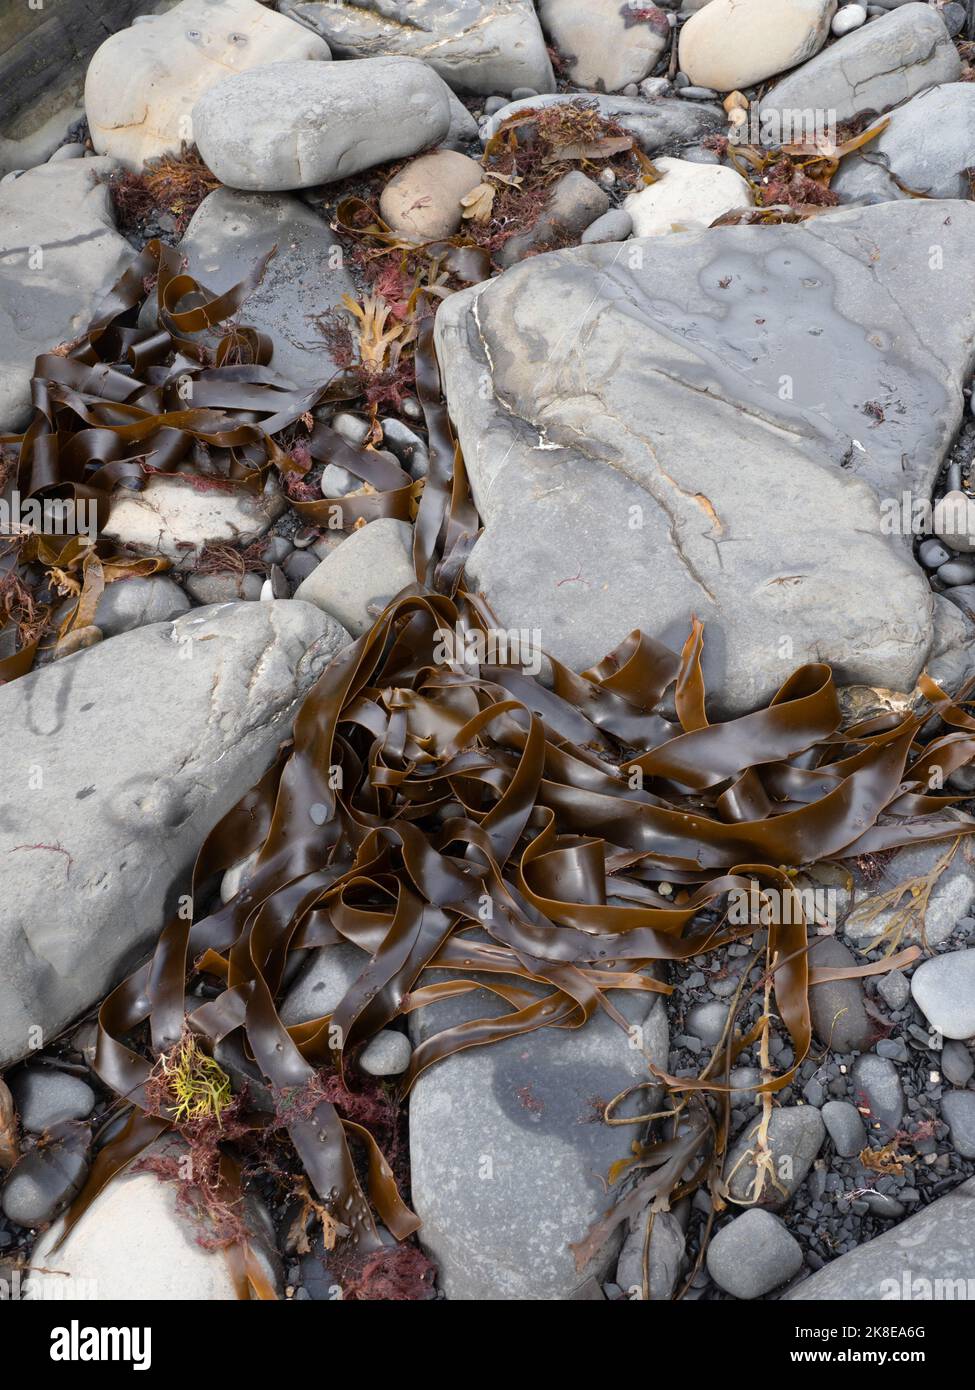 Wrack and seaweed on tideline Kimmeridge Bay, dorset Stock Photo